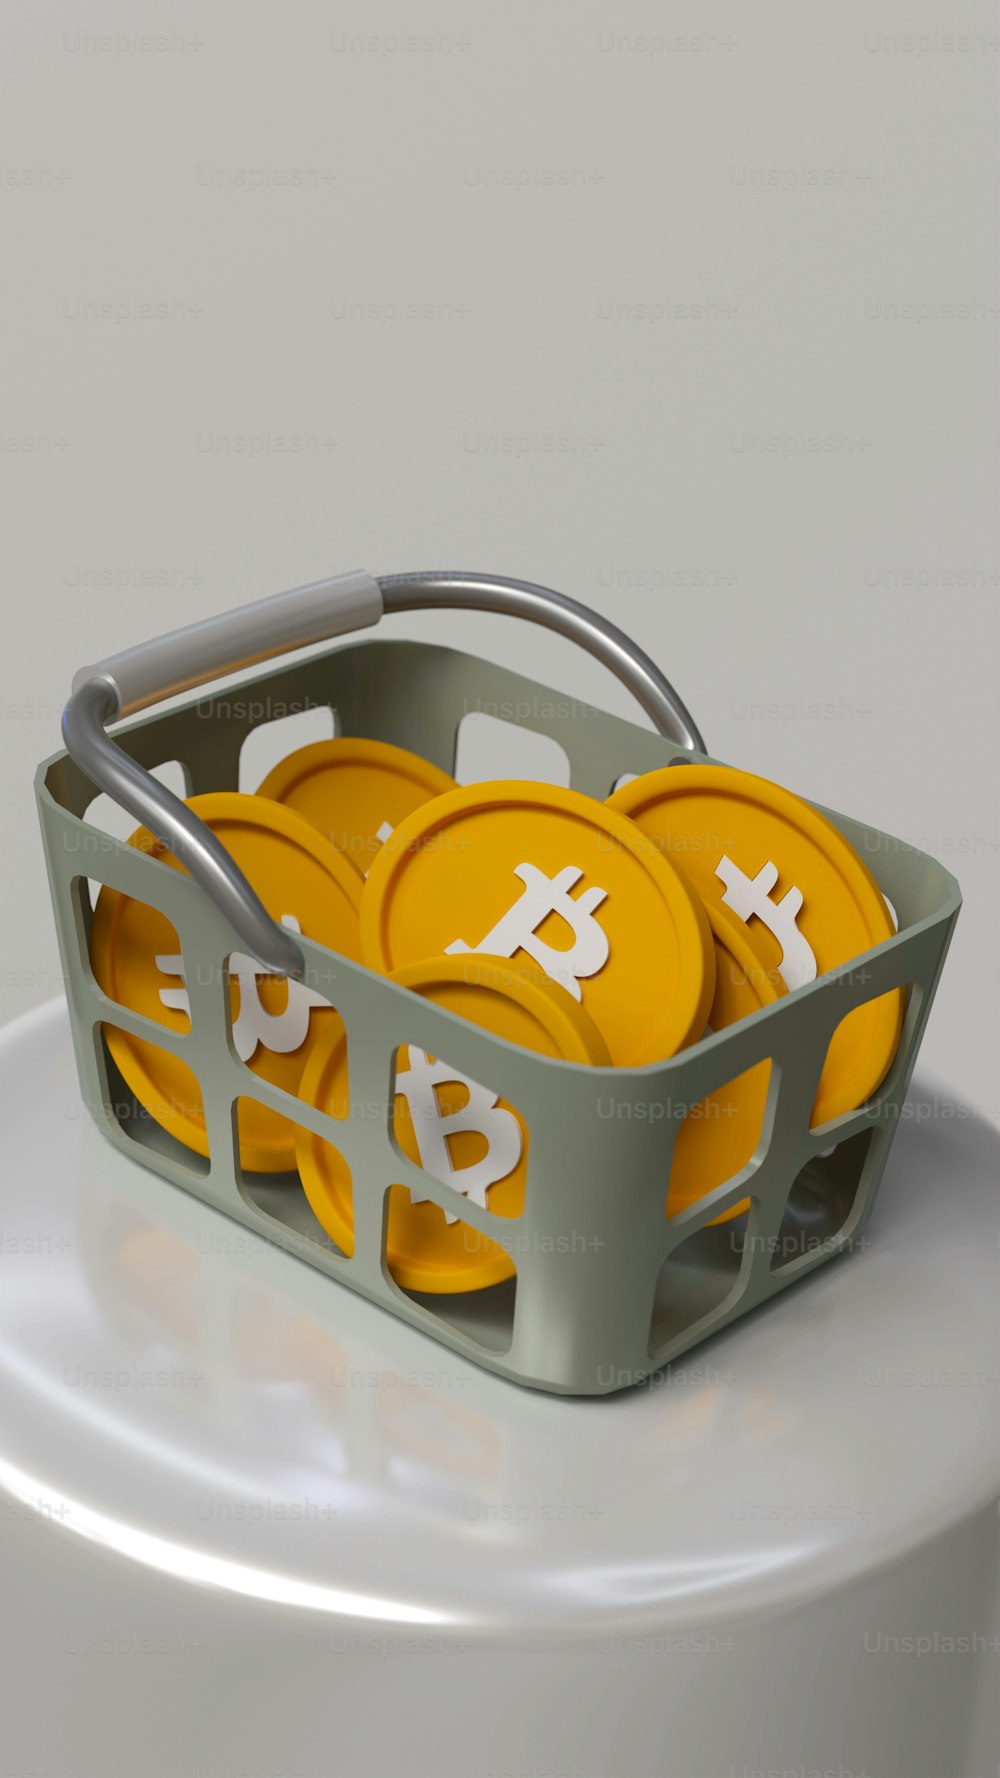 Ein Korb gefüllt mit gelben Bitcoins auf einem weißen Tisch